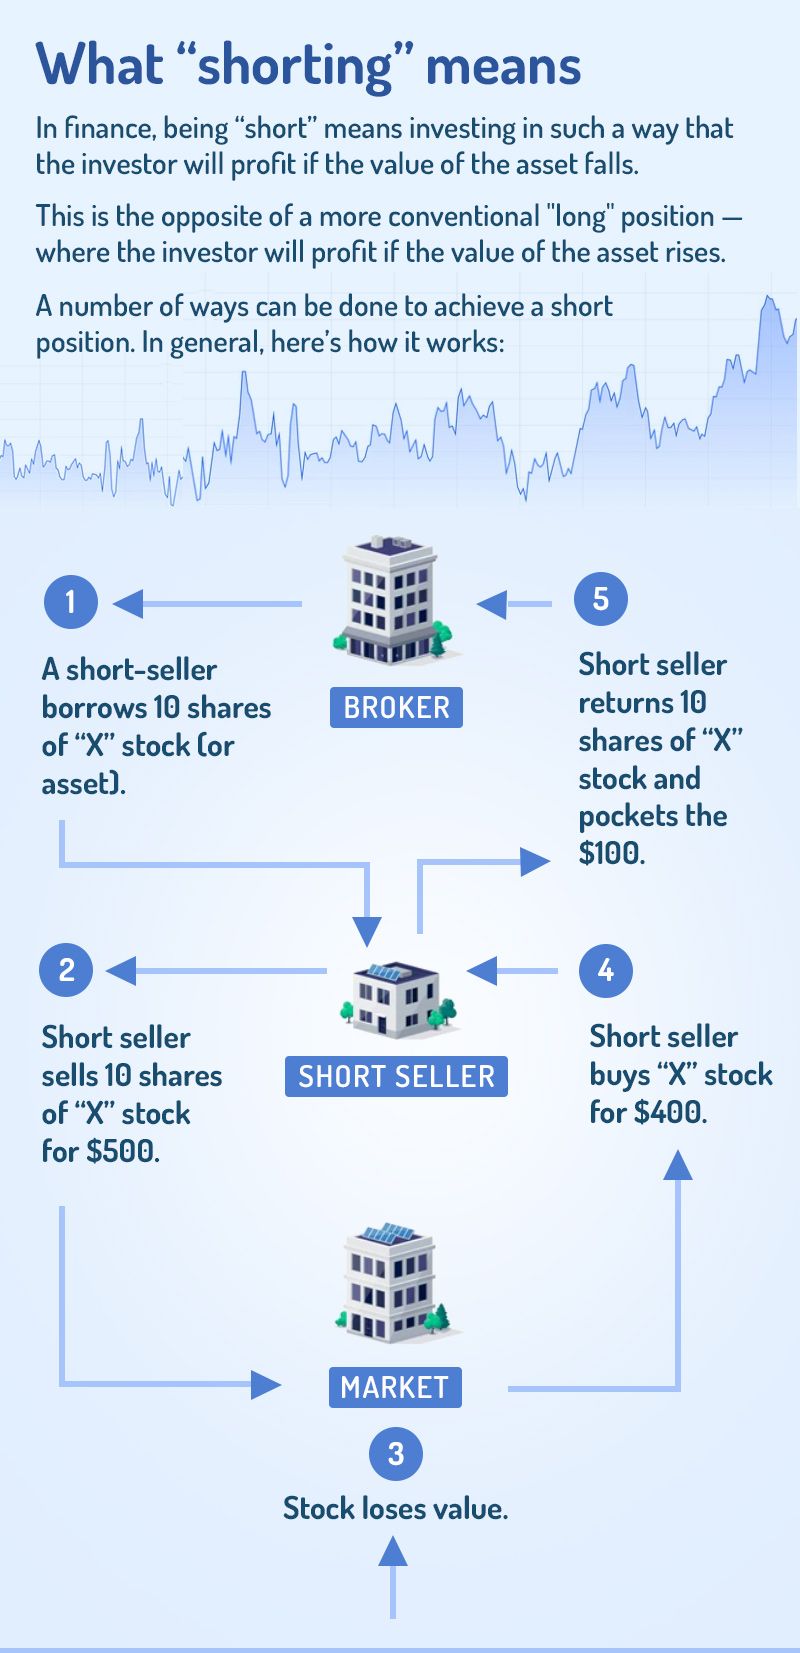 Stock shorting